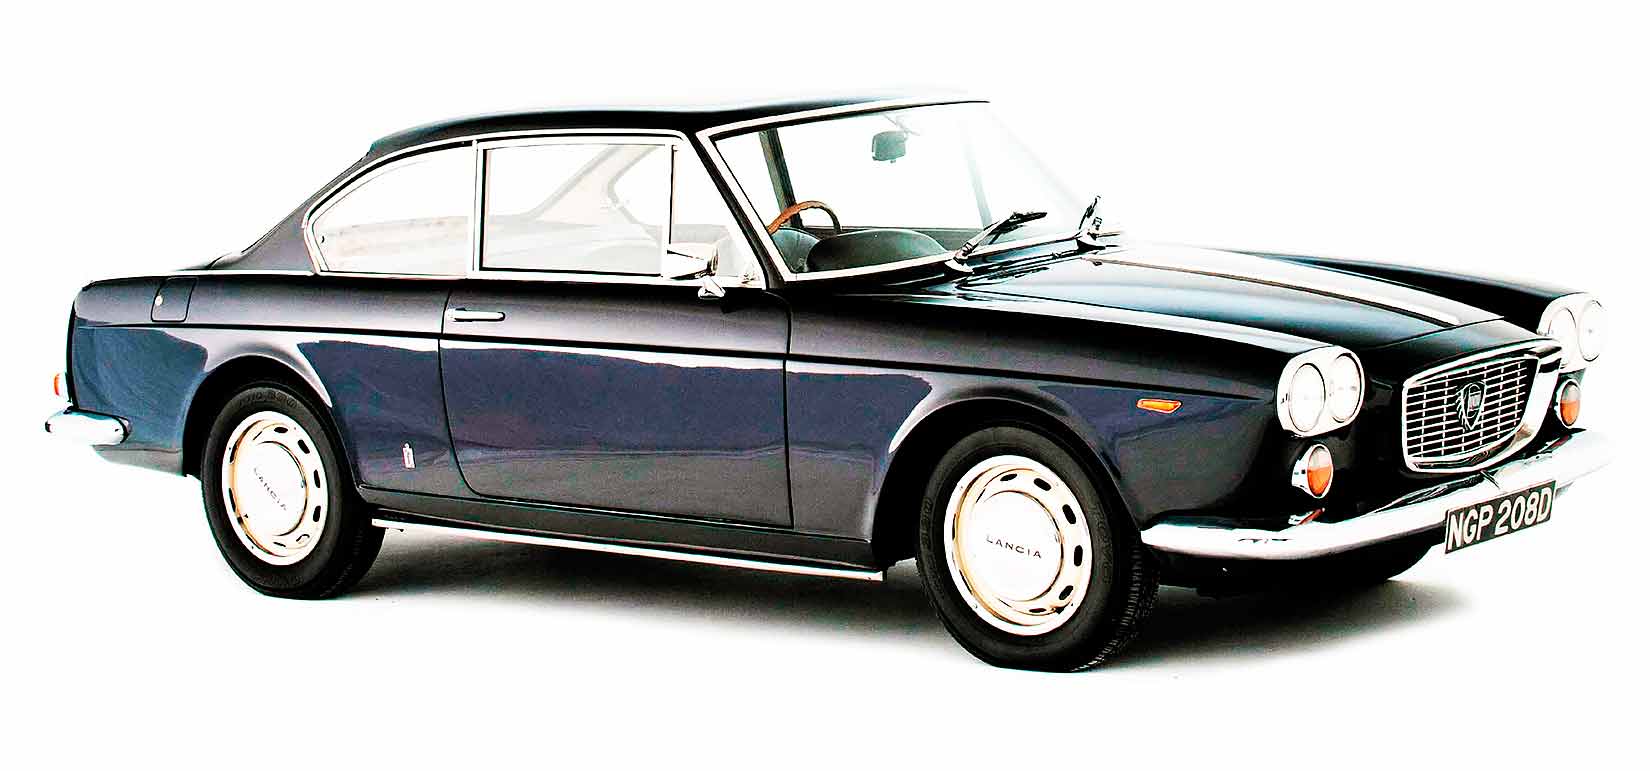 KOFFERRAUM Dichtung für Flavia Coupe 2000 (1969-71) - Lancia Vintage